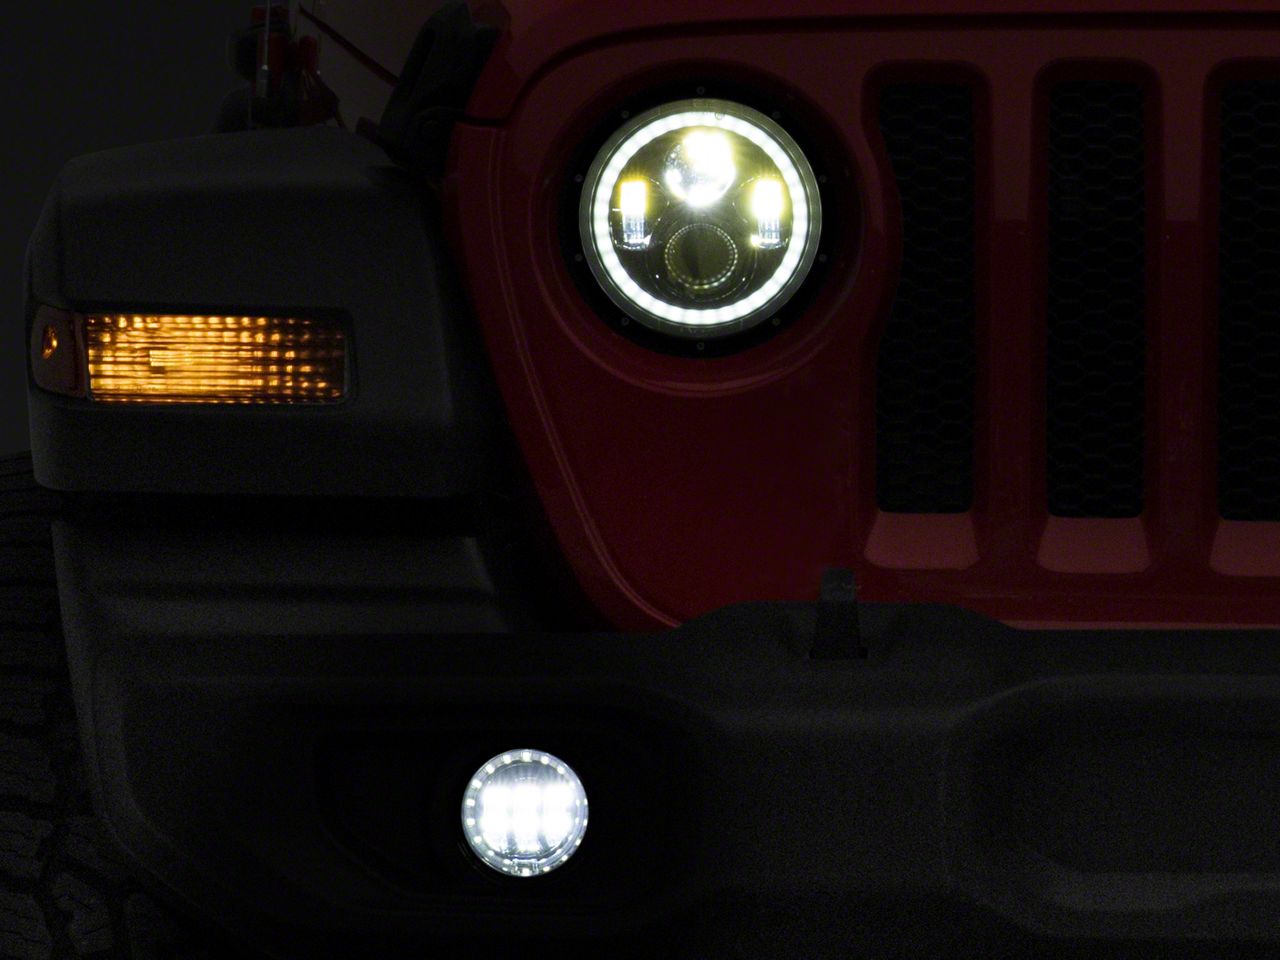 4" Round Fog Light Bumper Headlight Driving LED Passing Light For Jeep Wrangler